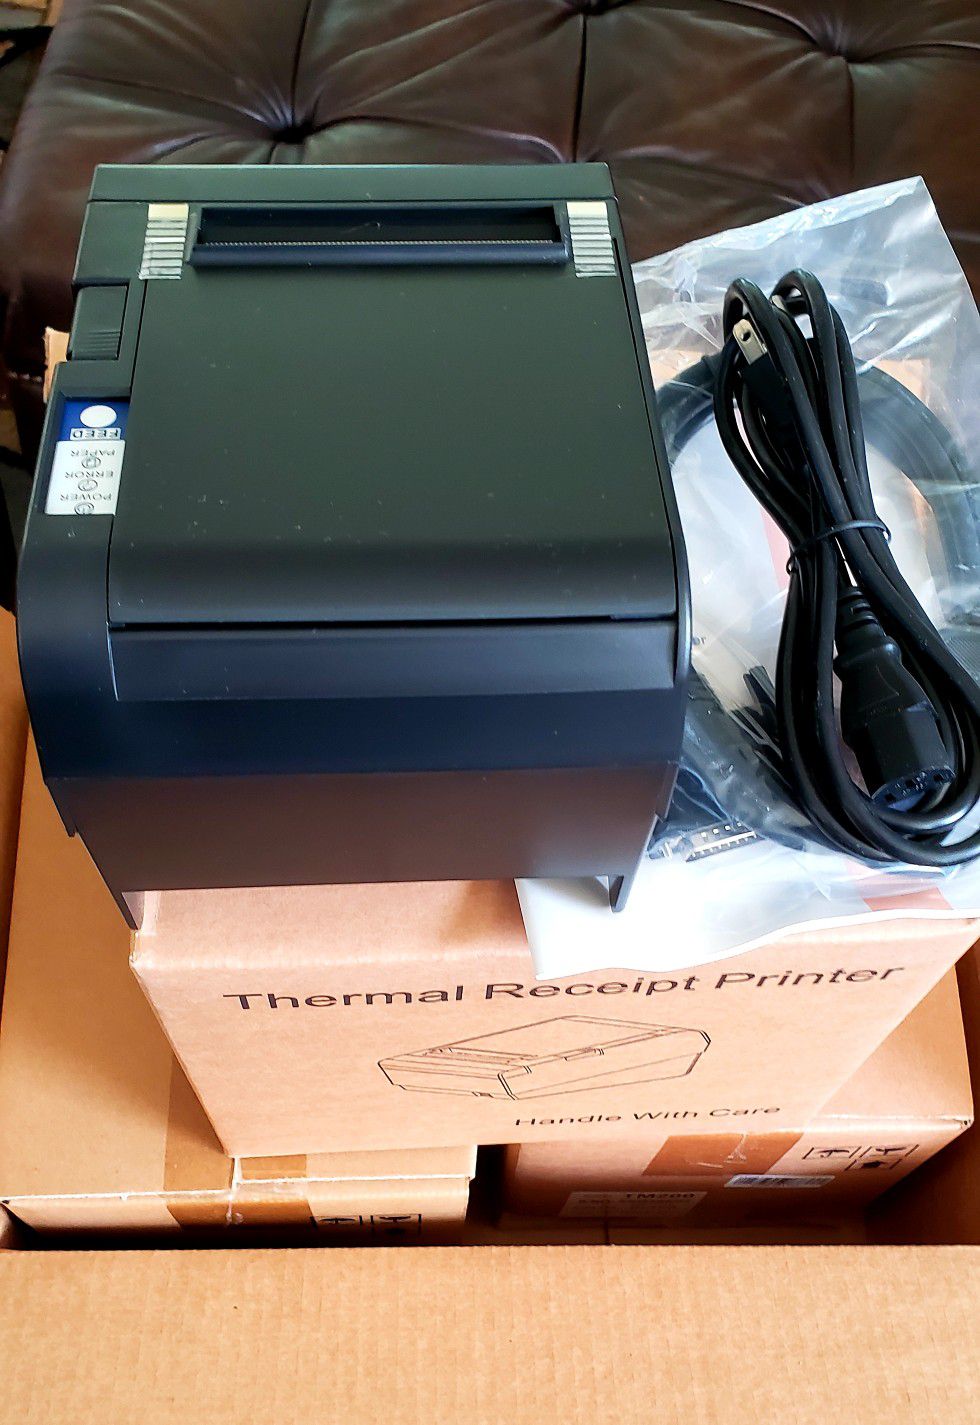 Dingo Thermal Receipt Printer